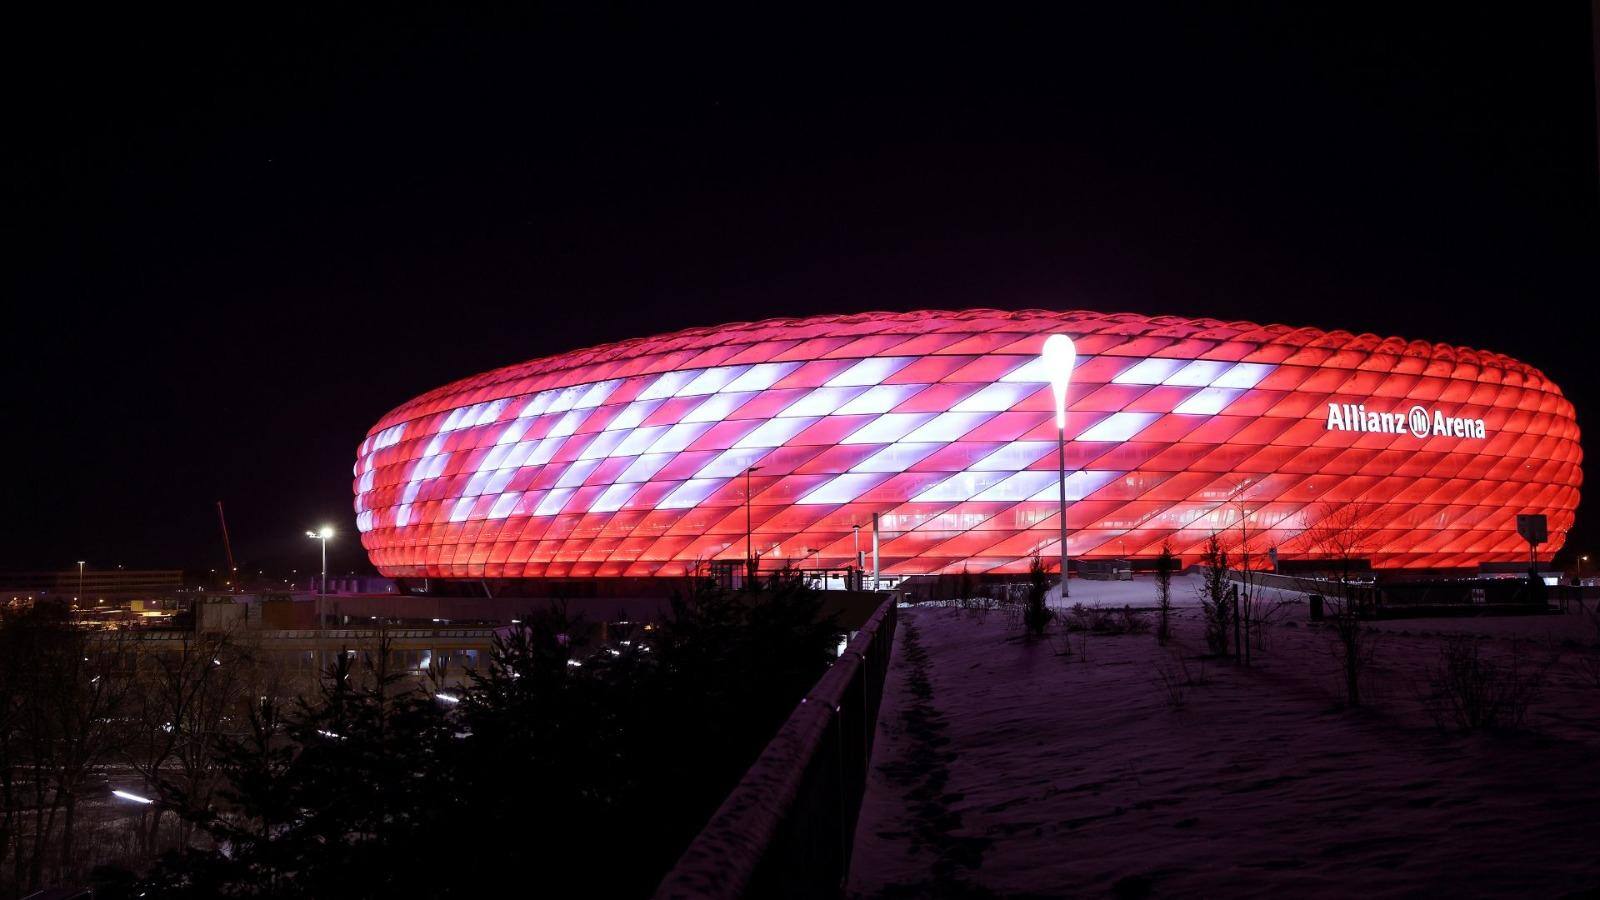 Estádio do Bayern de Munique com iluminação especial e mensagem em homenagem a Franz Beckenbauer